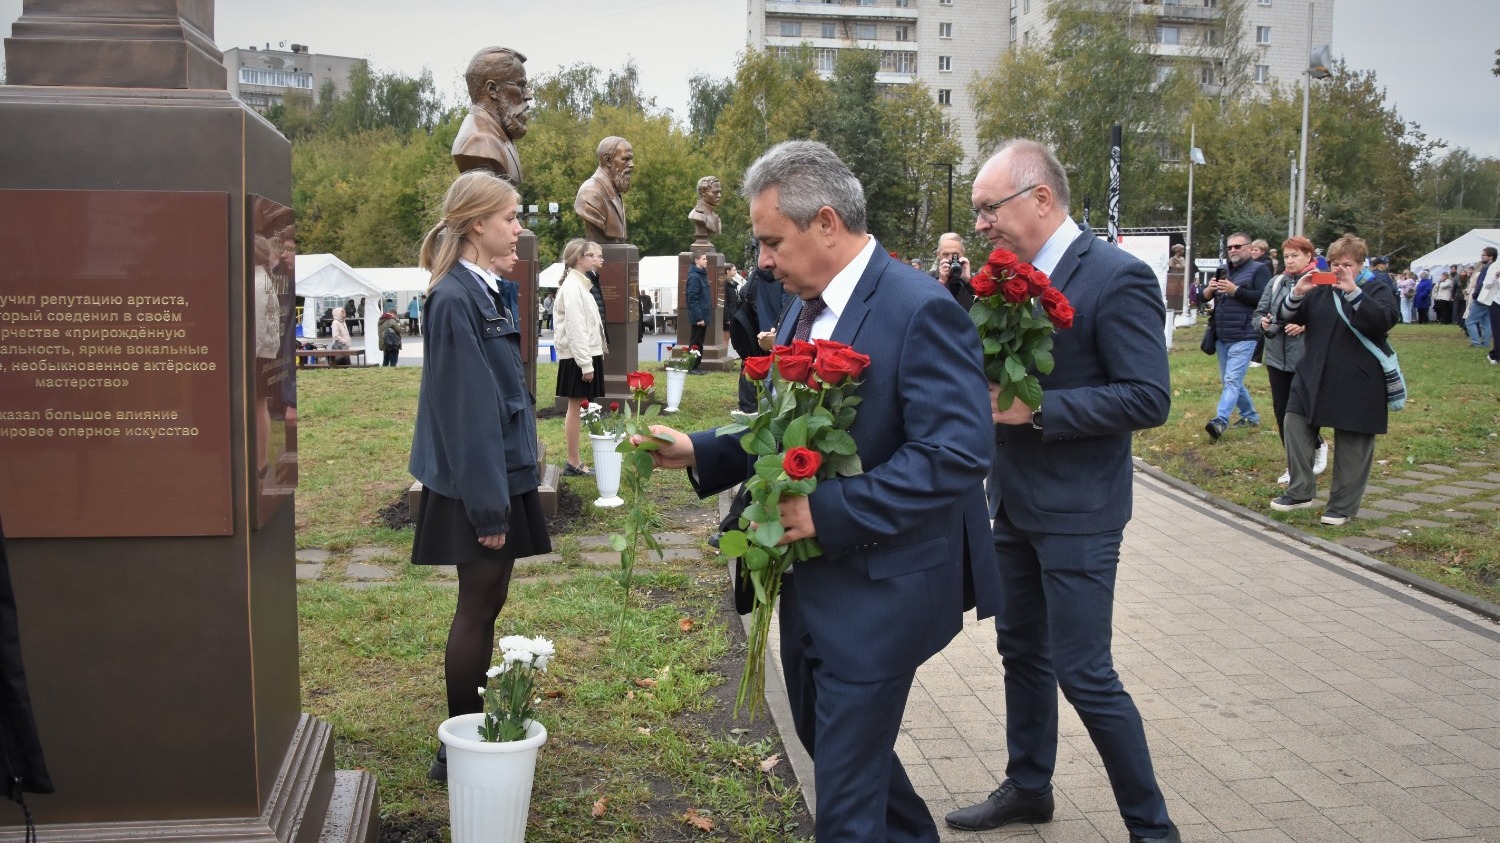 Сити-менеджер (в центре слева) Алексей Смирнов и мэр Костромы (справа) Юрий Журин возлагают цветы на открытии аллеи.